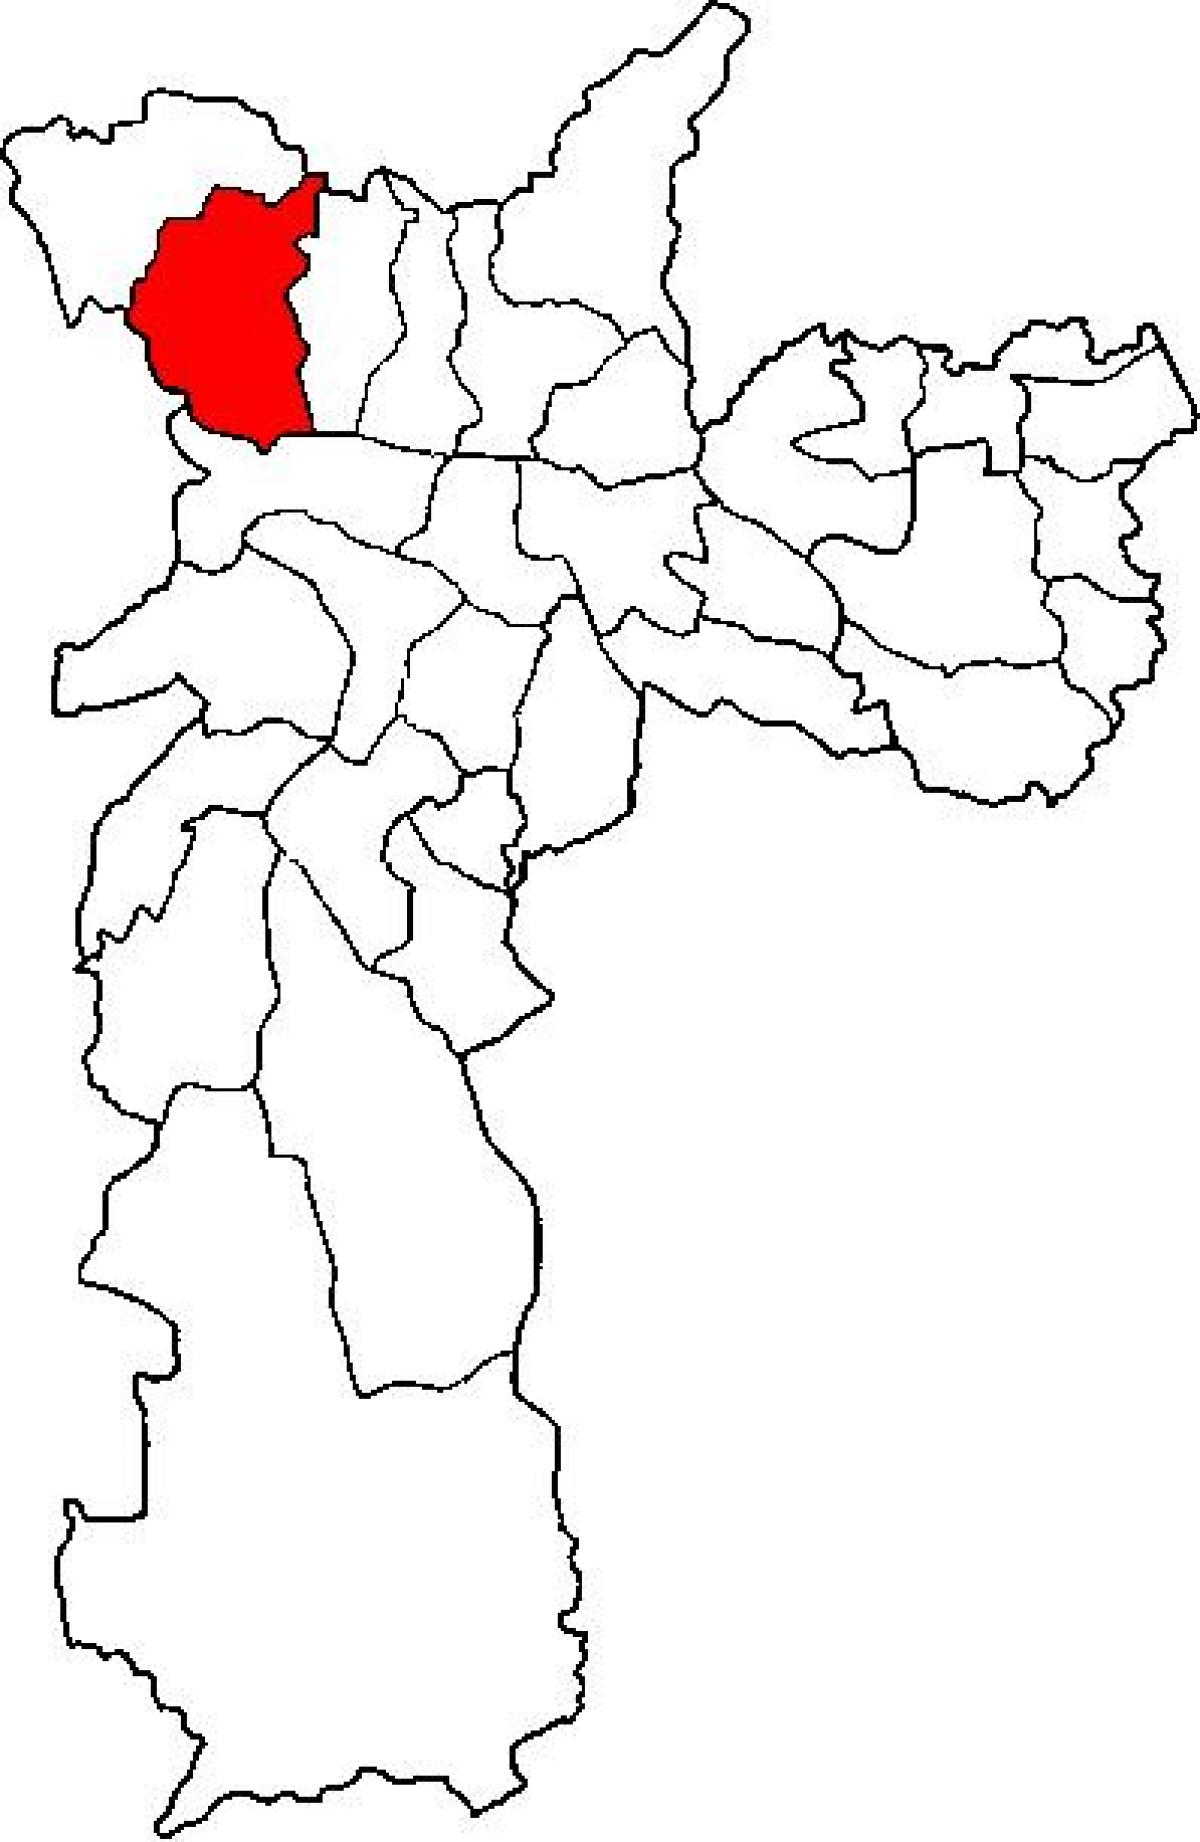 नक्शे के पिरिटुबा-जरगुआ में उप-प्रान्त साओ पाउलो